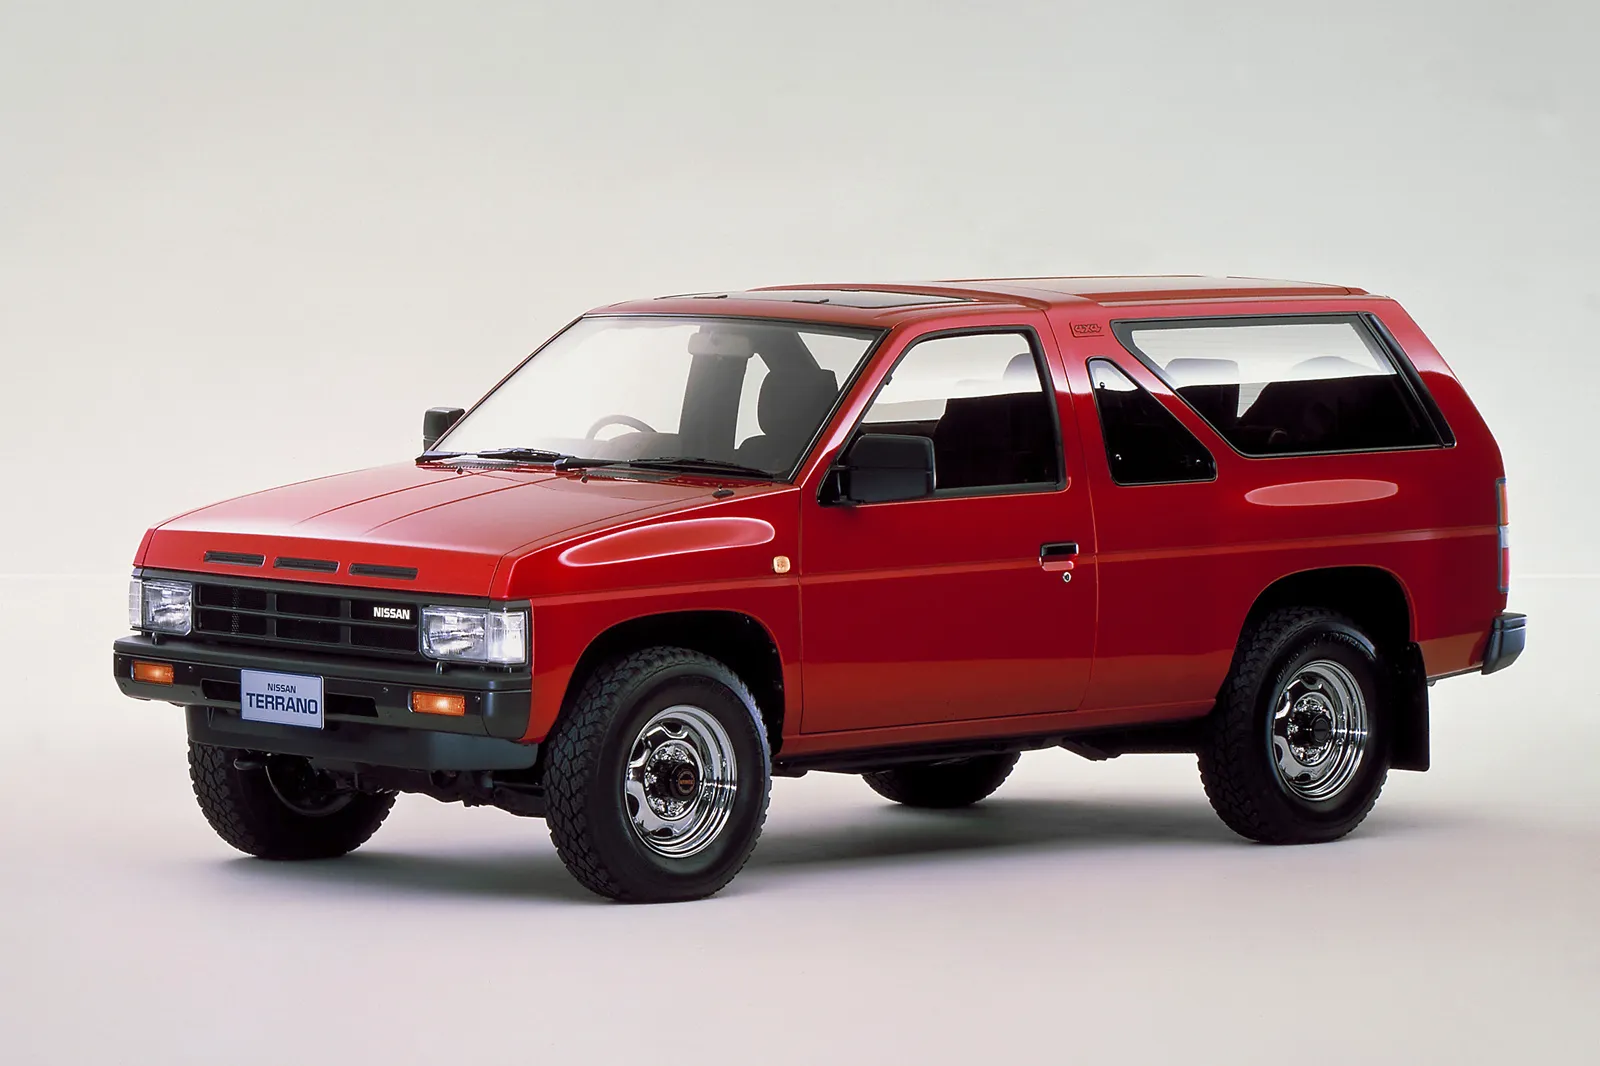 Nissan Terrano 2.7 1987 photo - 1